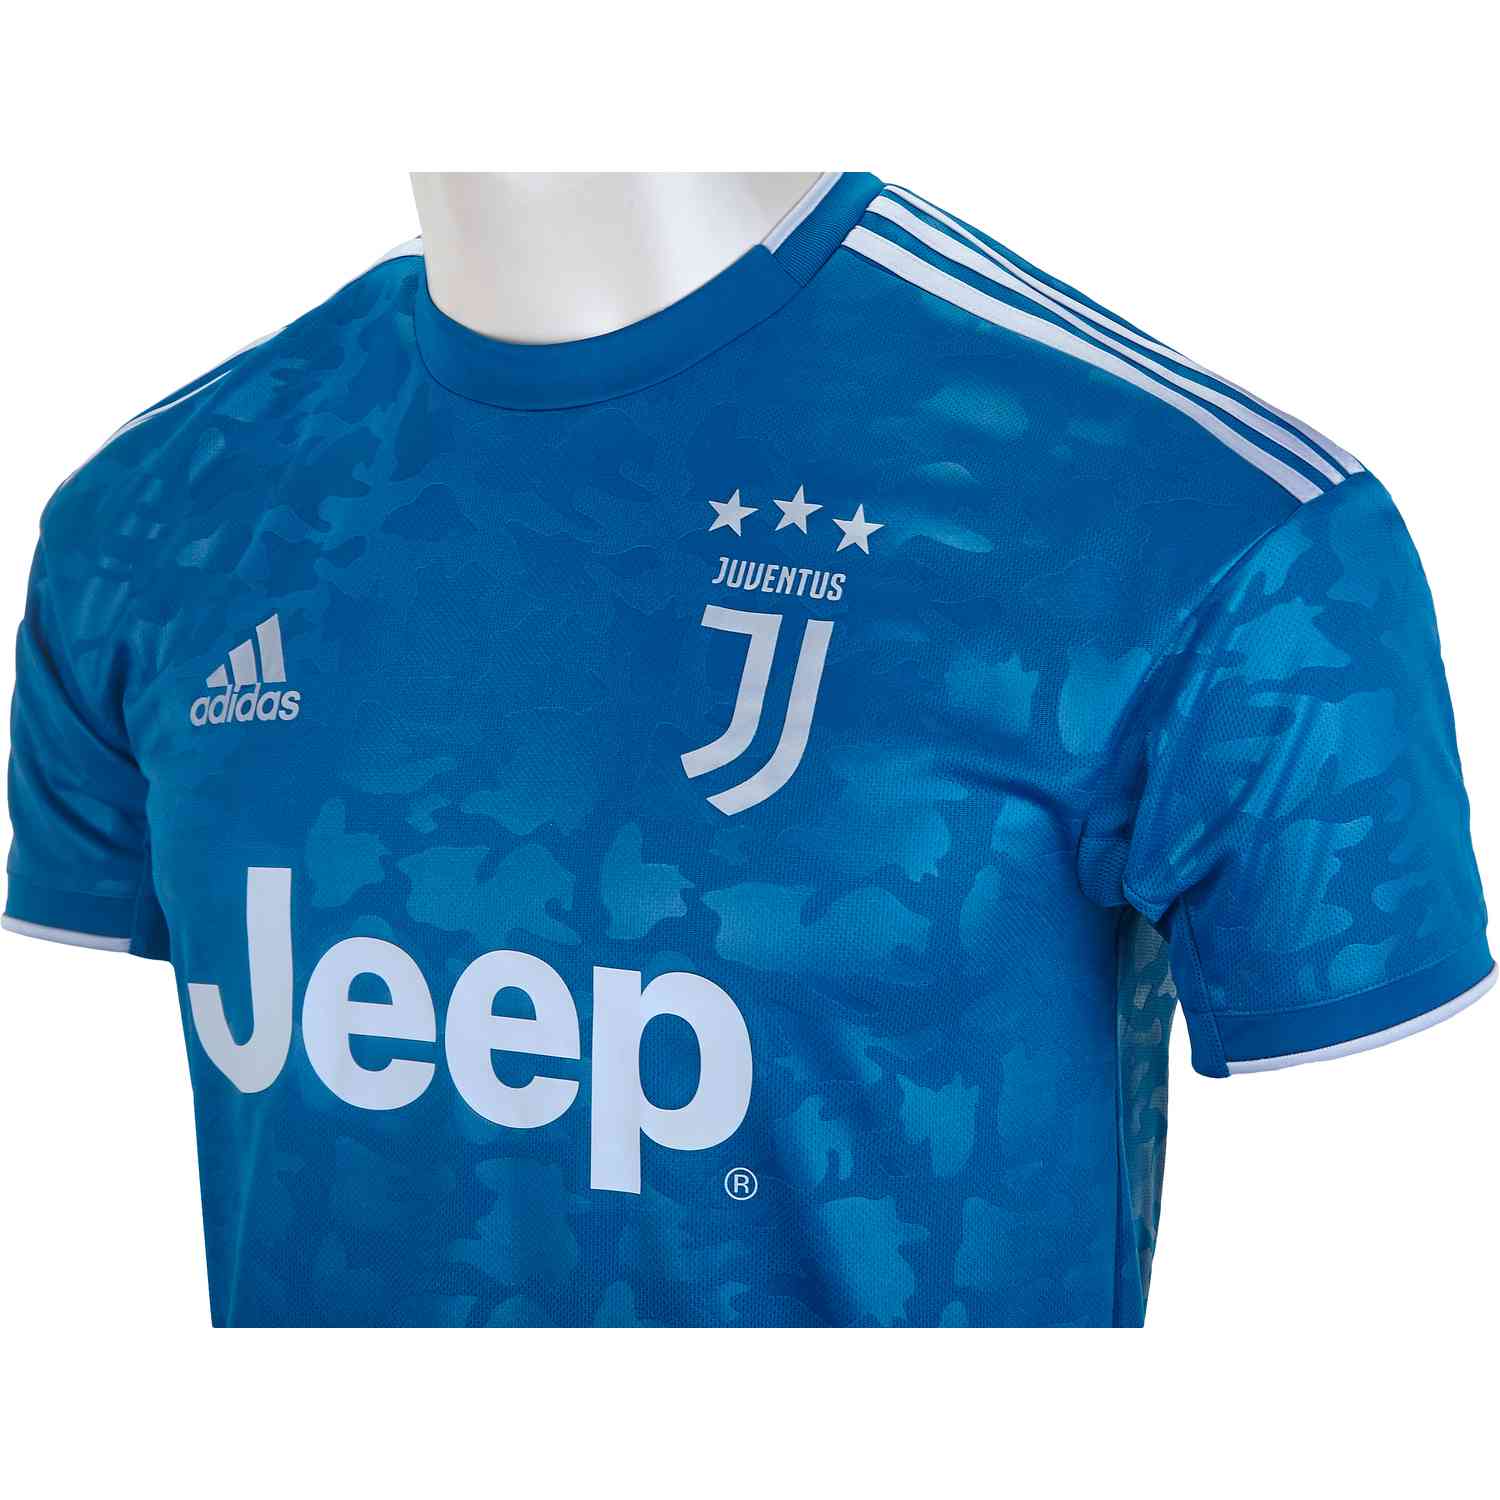 adidas Juventus 3rd Jersey - 2019/20 